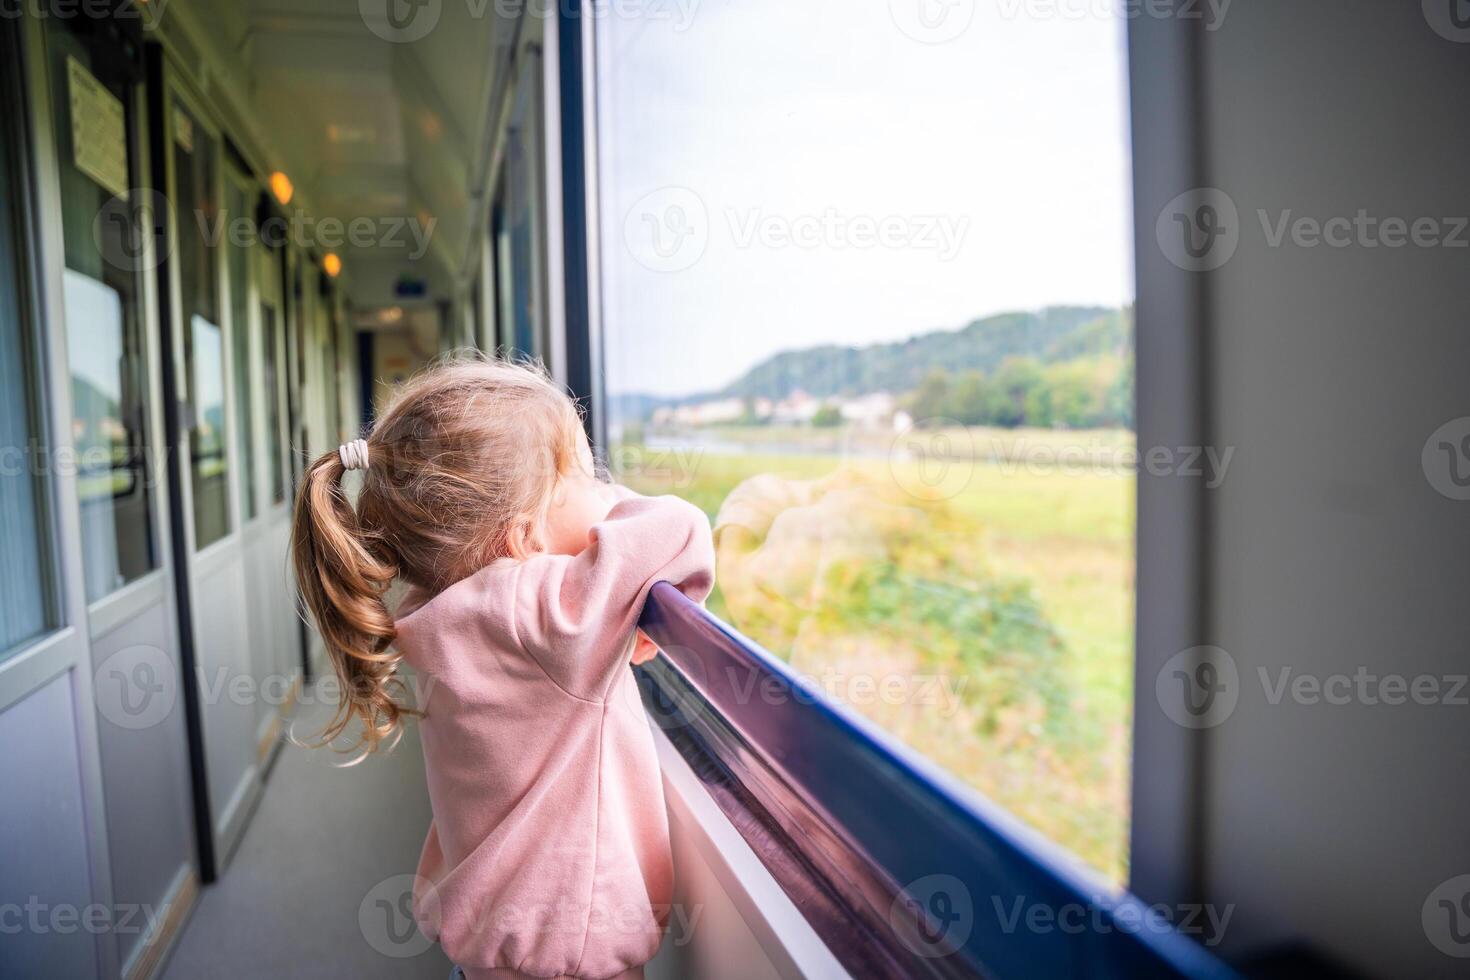 mooi weinig meisje op zoek uit trein venster buiten, gedurende reizend. op reis door spoorweg, Europa foto